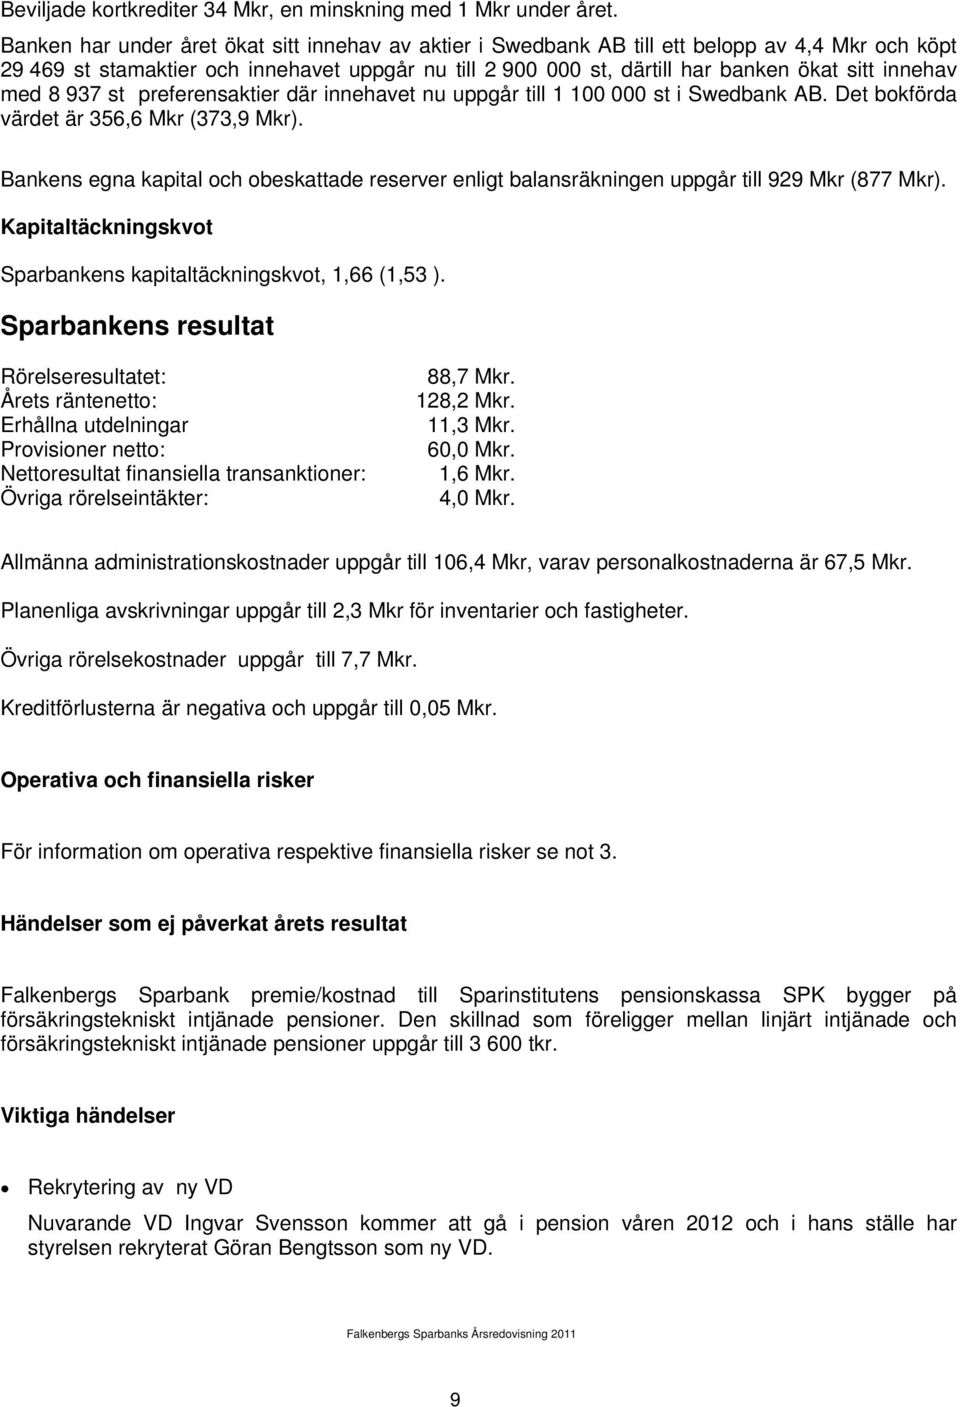 innehav med 8 937 st preferensaktier där innehavet nu uppgår till 1 100 000 st i Swedbank AB. Det bokförda värdet är 356,6 Mkr (373,9 Mkr).